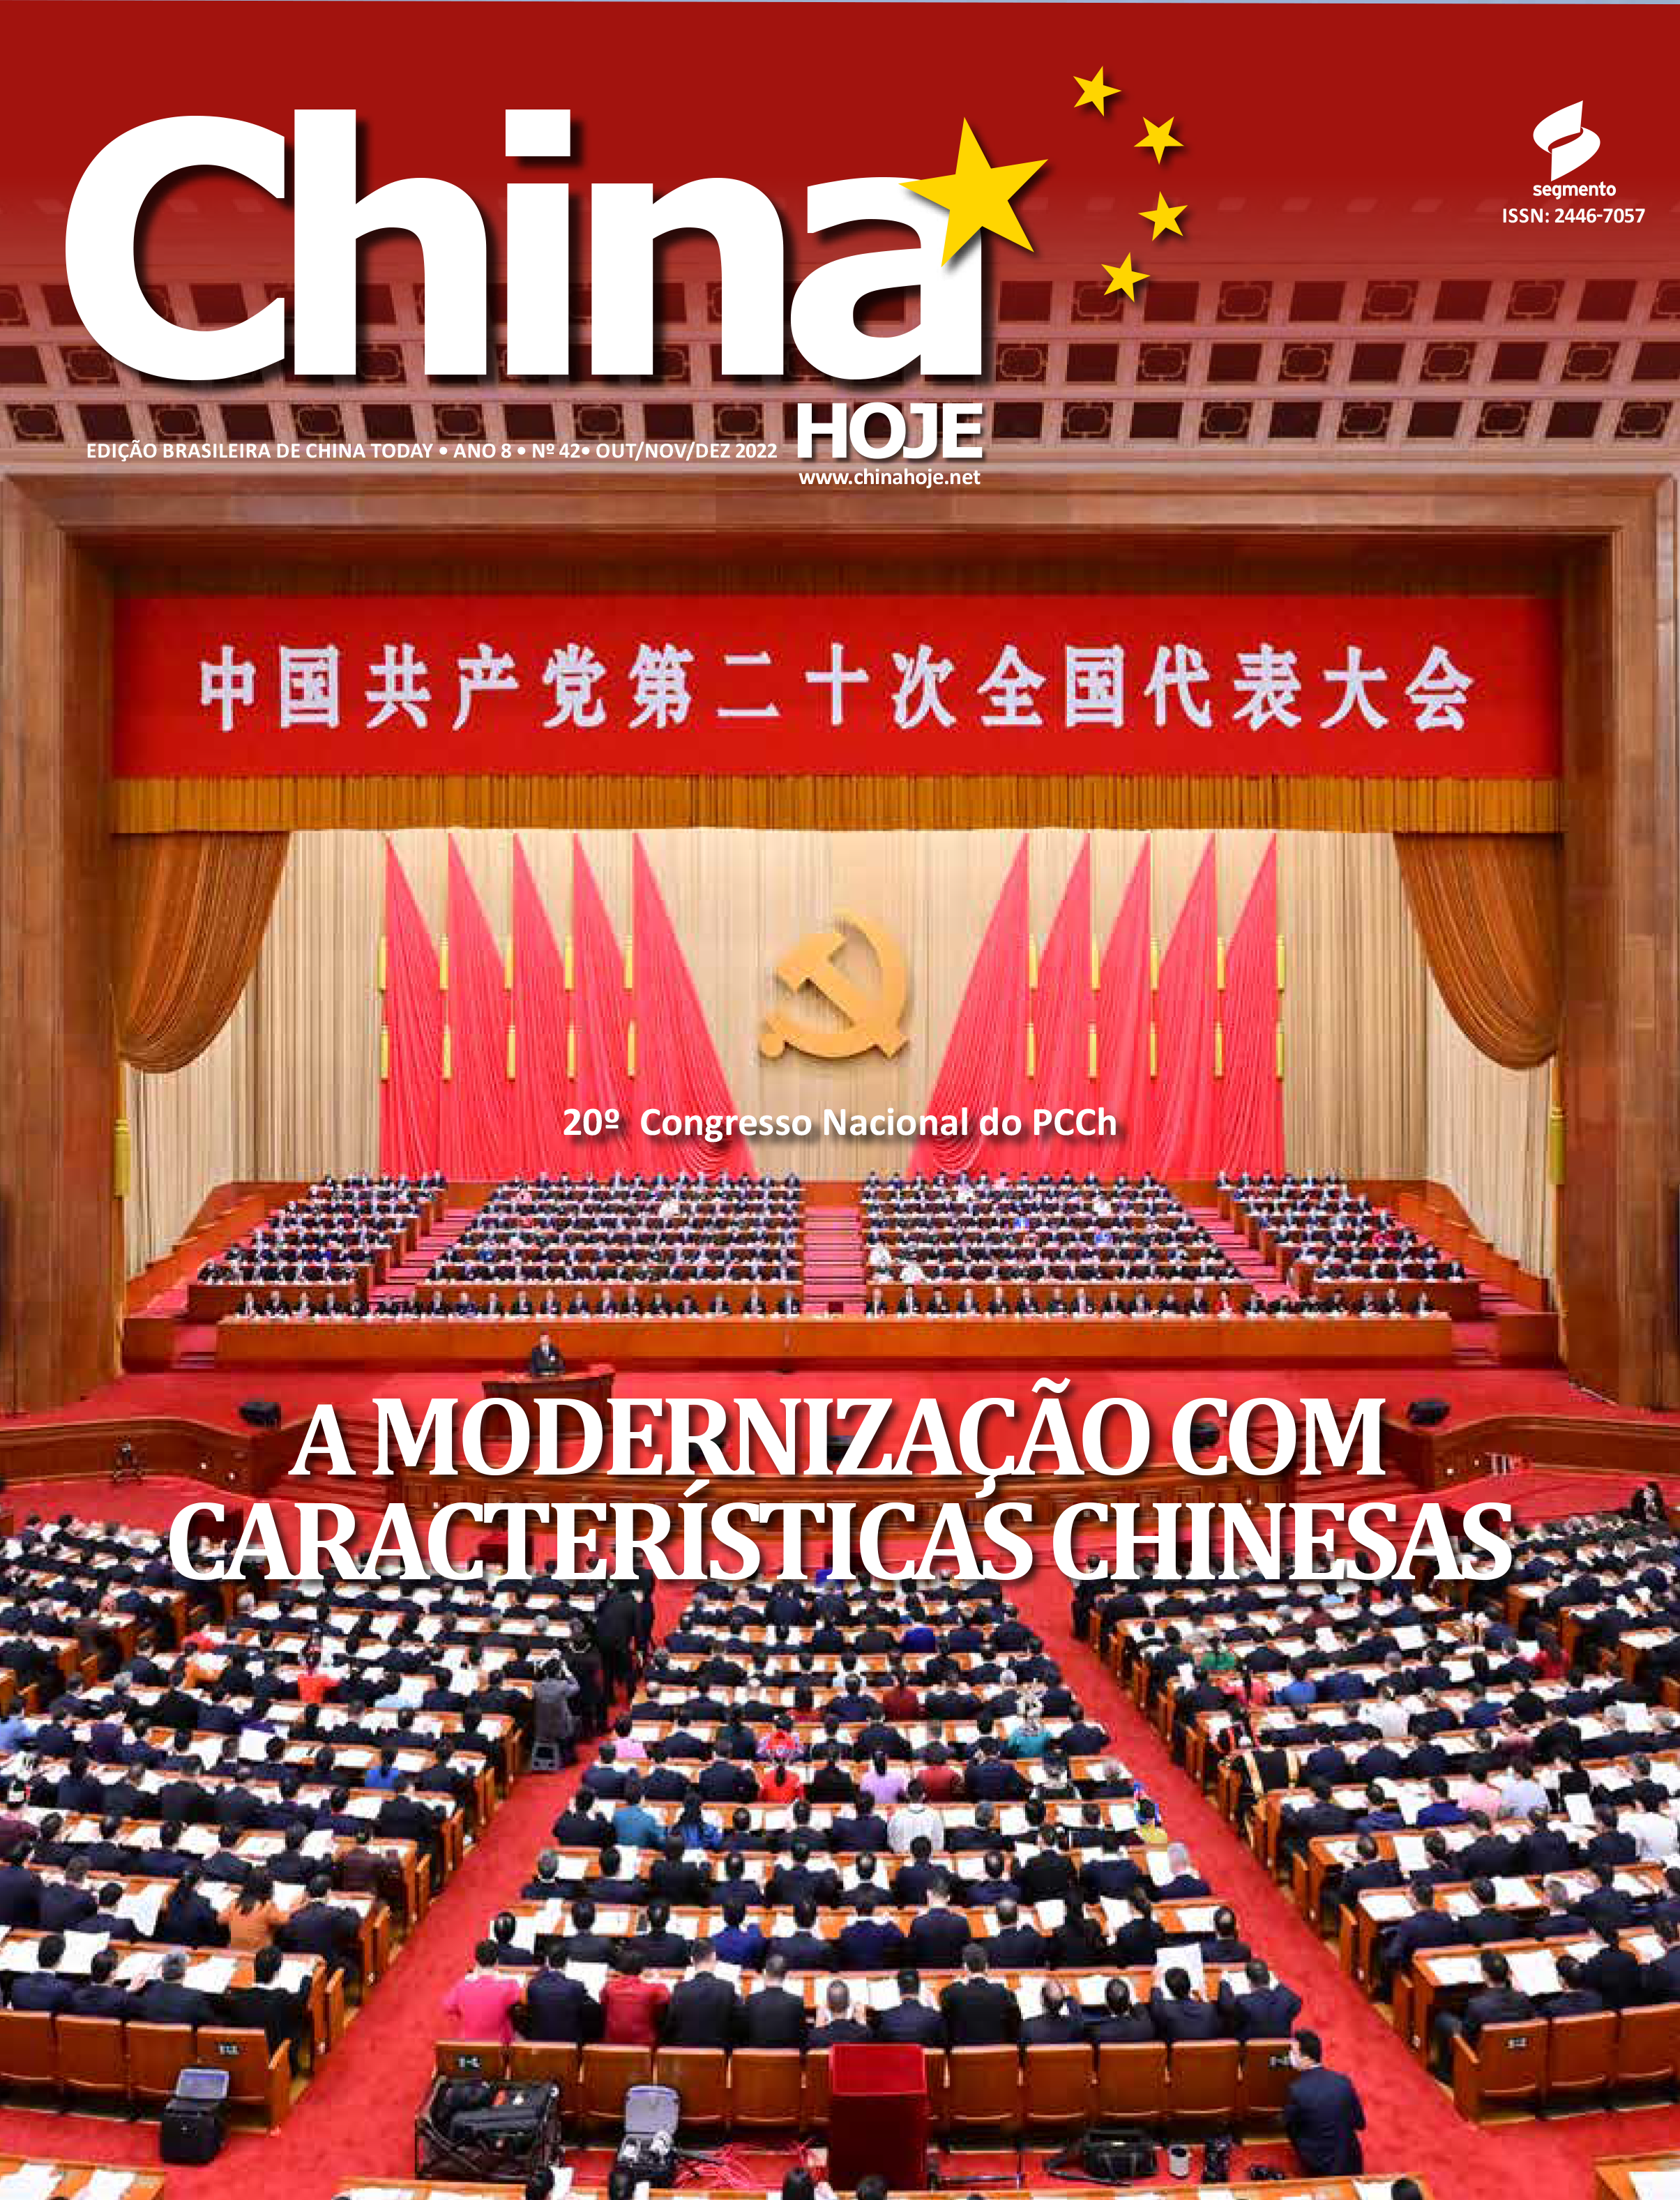 A modernização com características chinesas